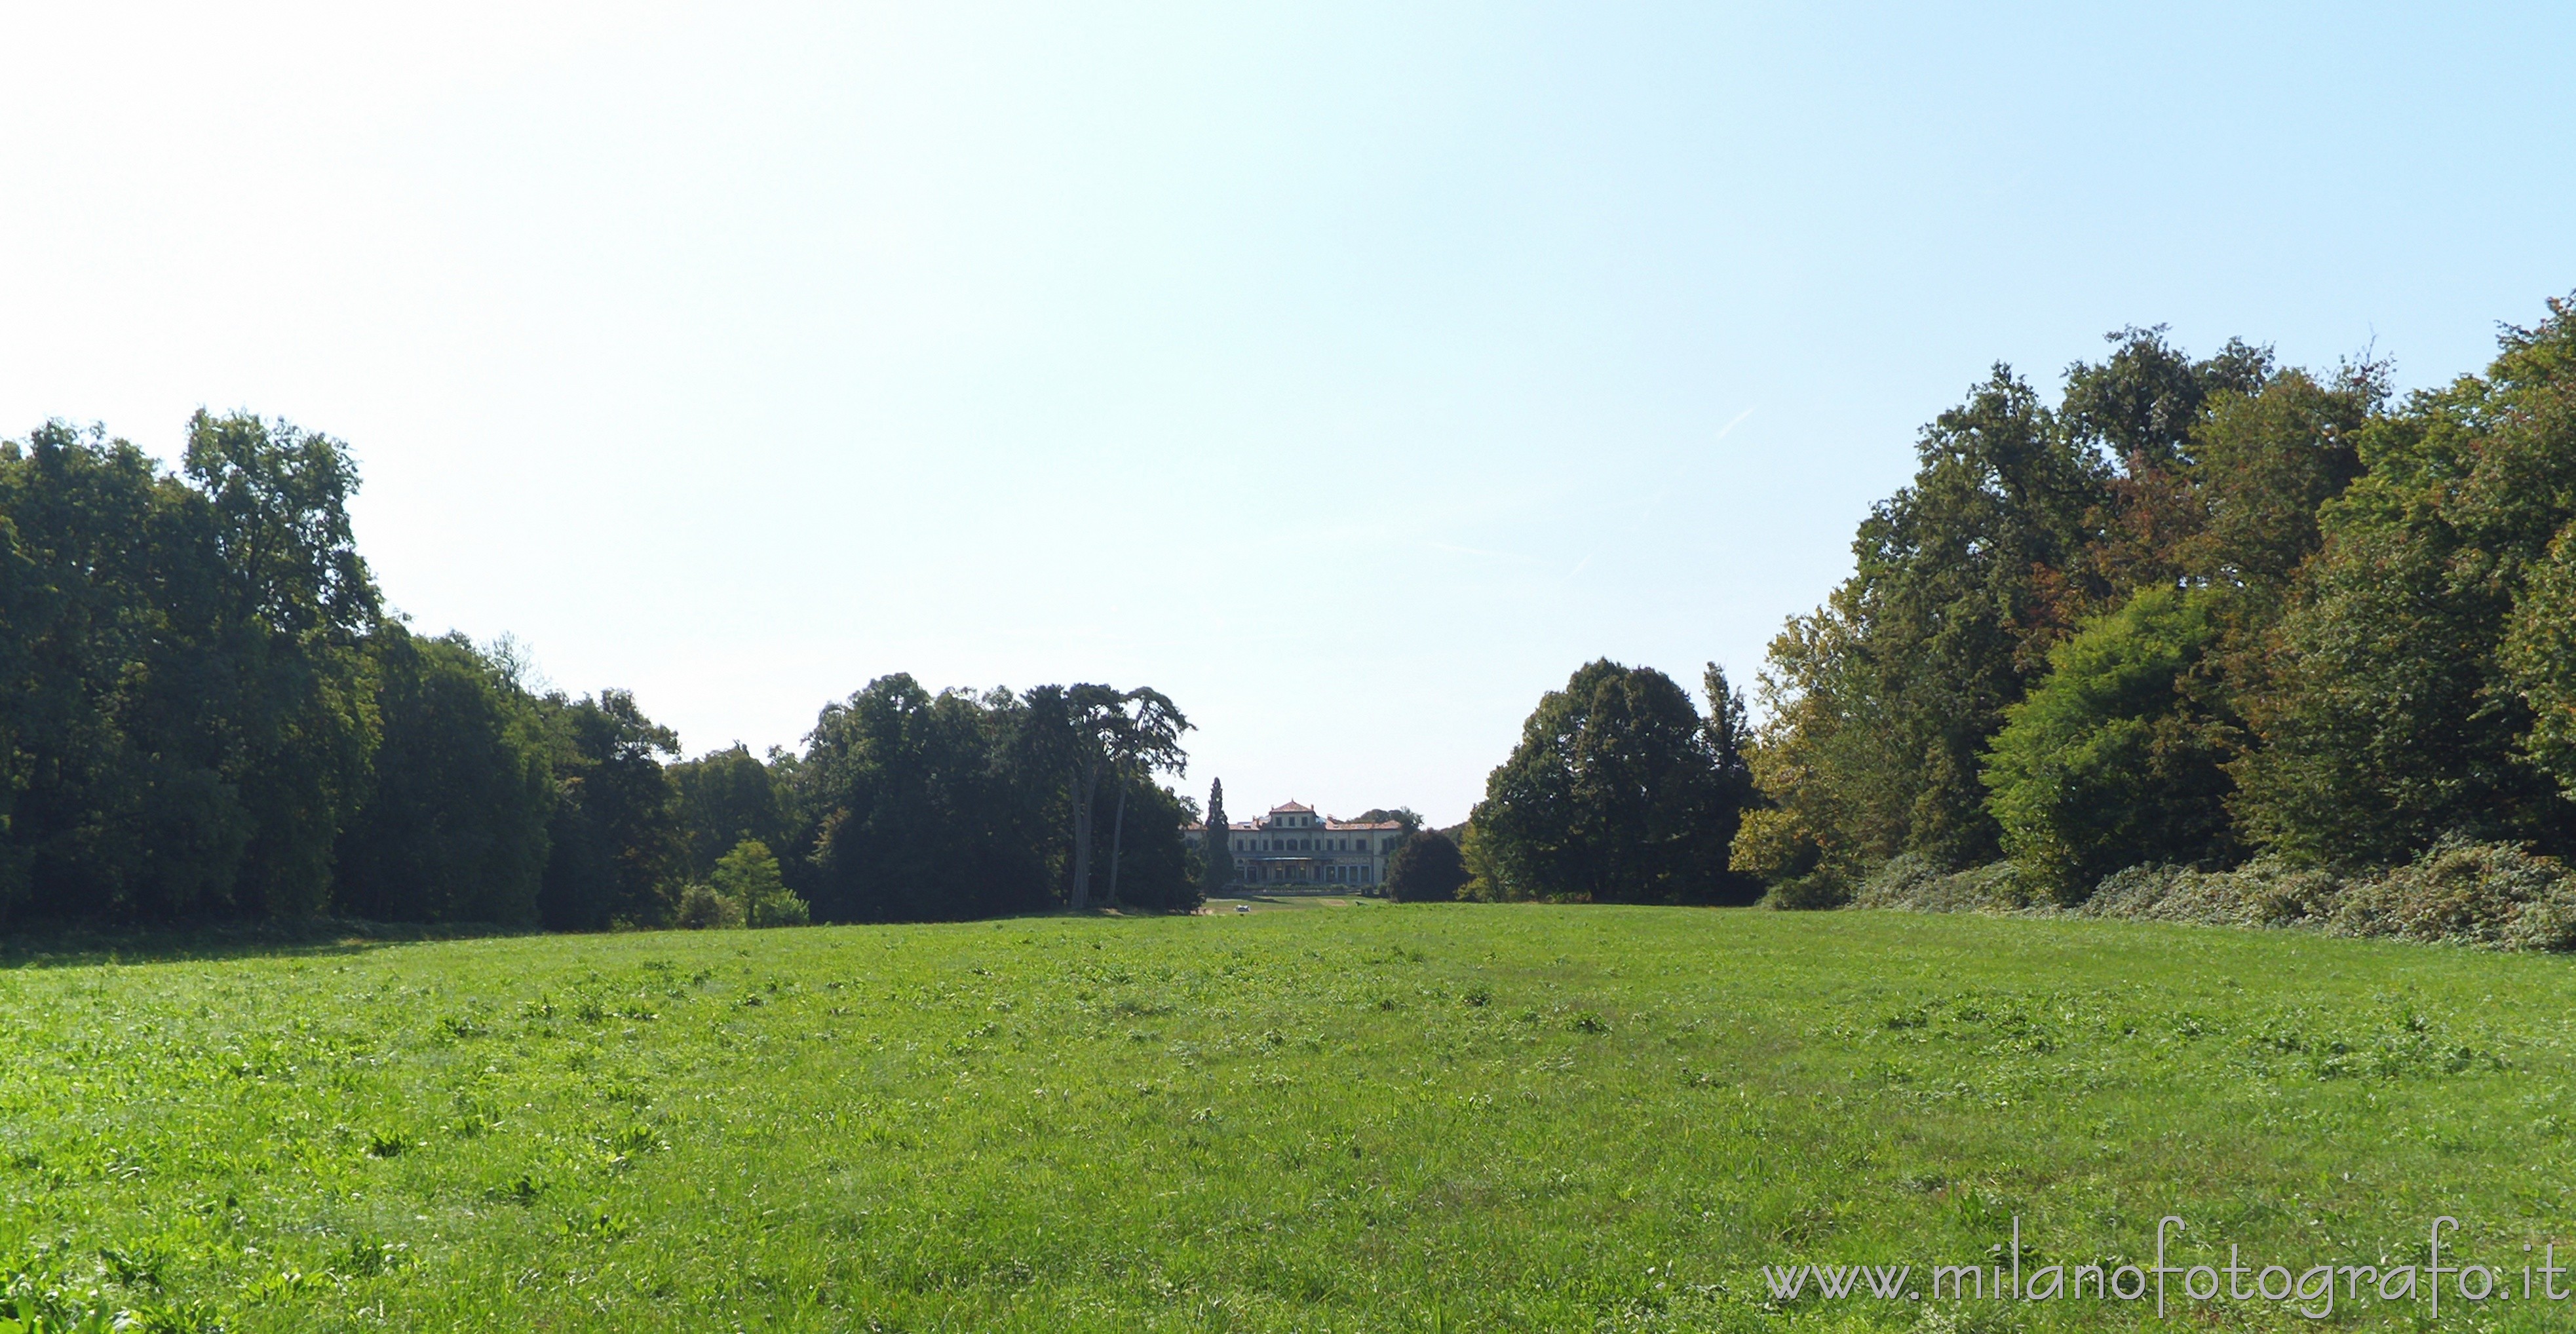 Arcore (Monza e Brianza, Italy): The meadow in the center of the park of Villa Borromeo d'Adda - Arcore (Monza e Brianza, Italy)